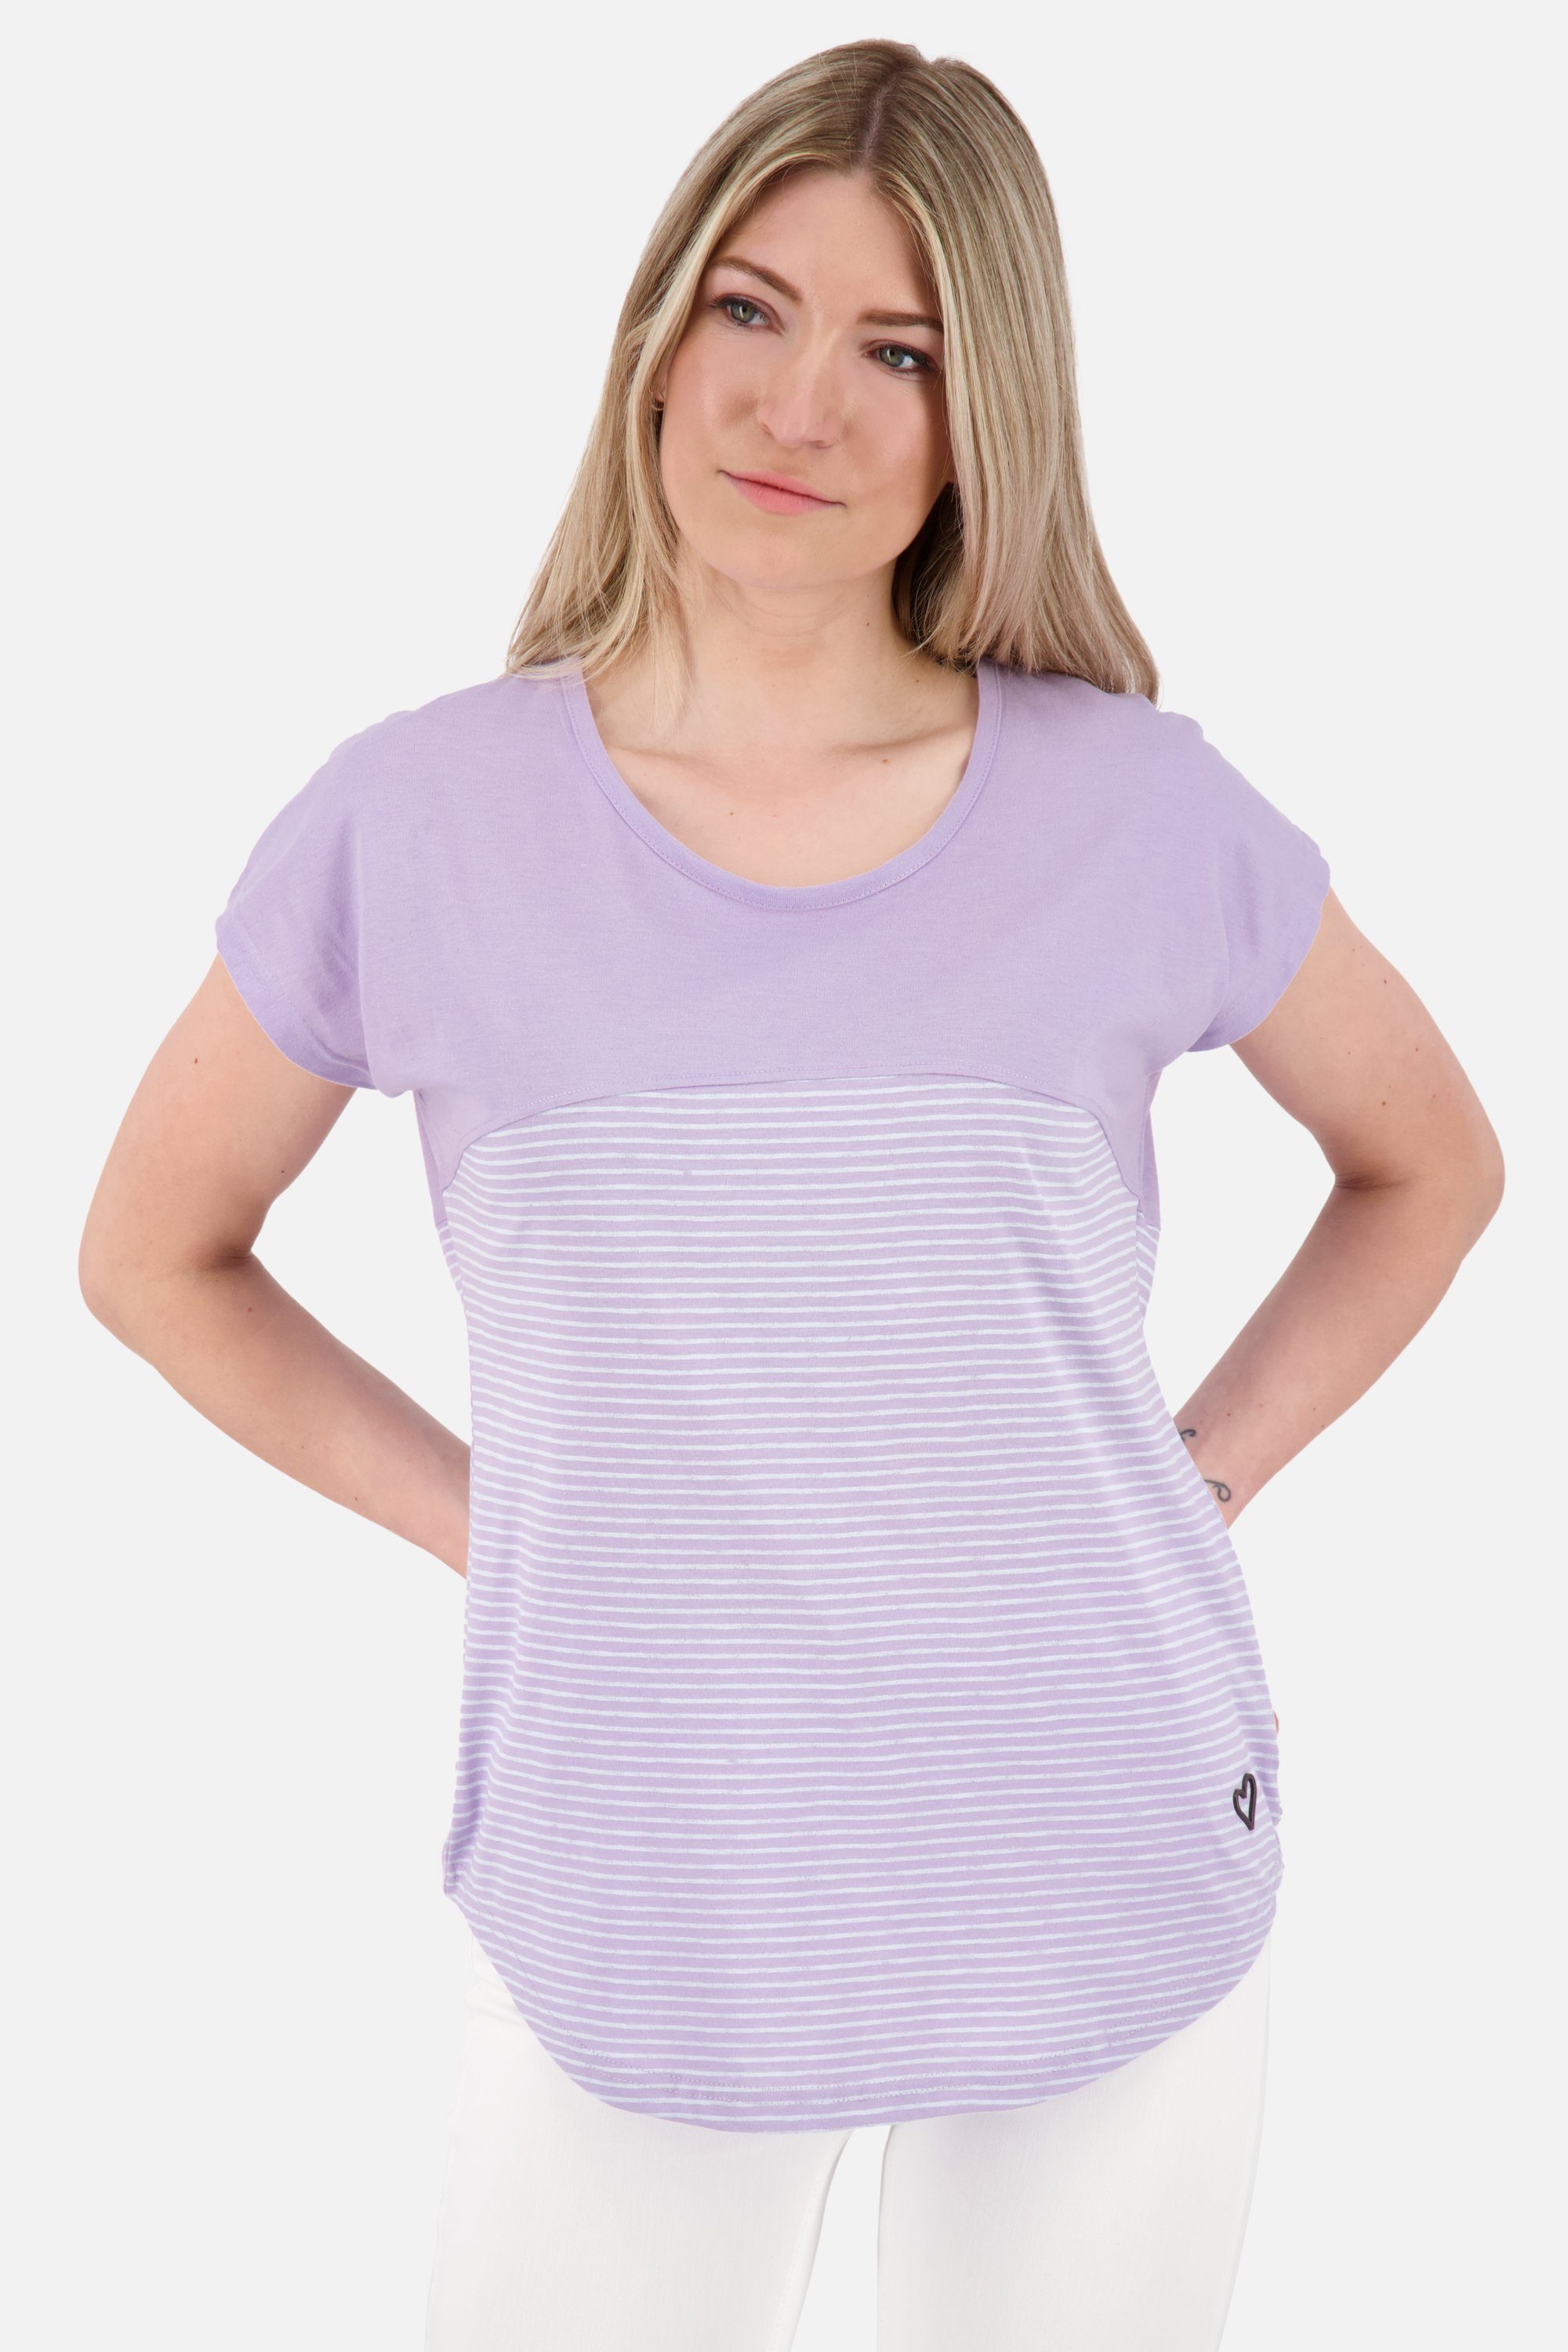 Kurzarmshirt, Shirt Shirt ClarettaAK Damen Rundhalsshirt lavender & Z Alife Kickin digital